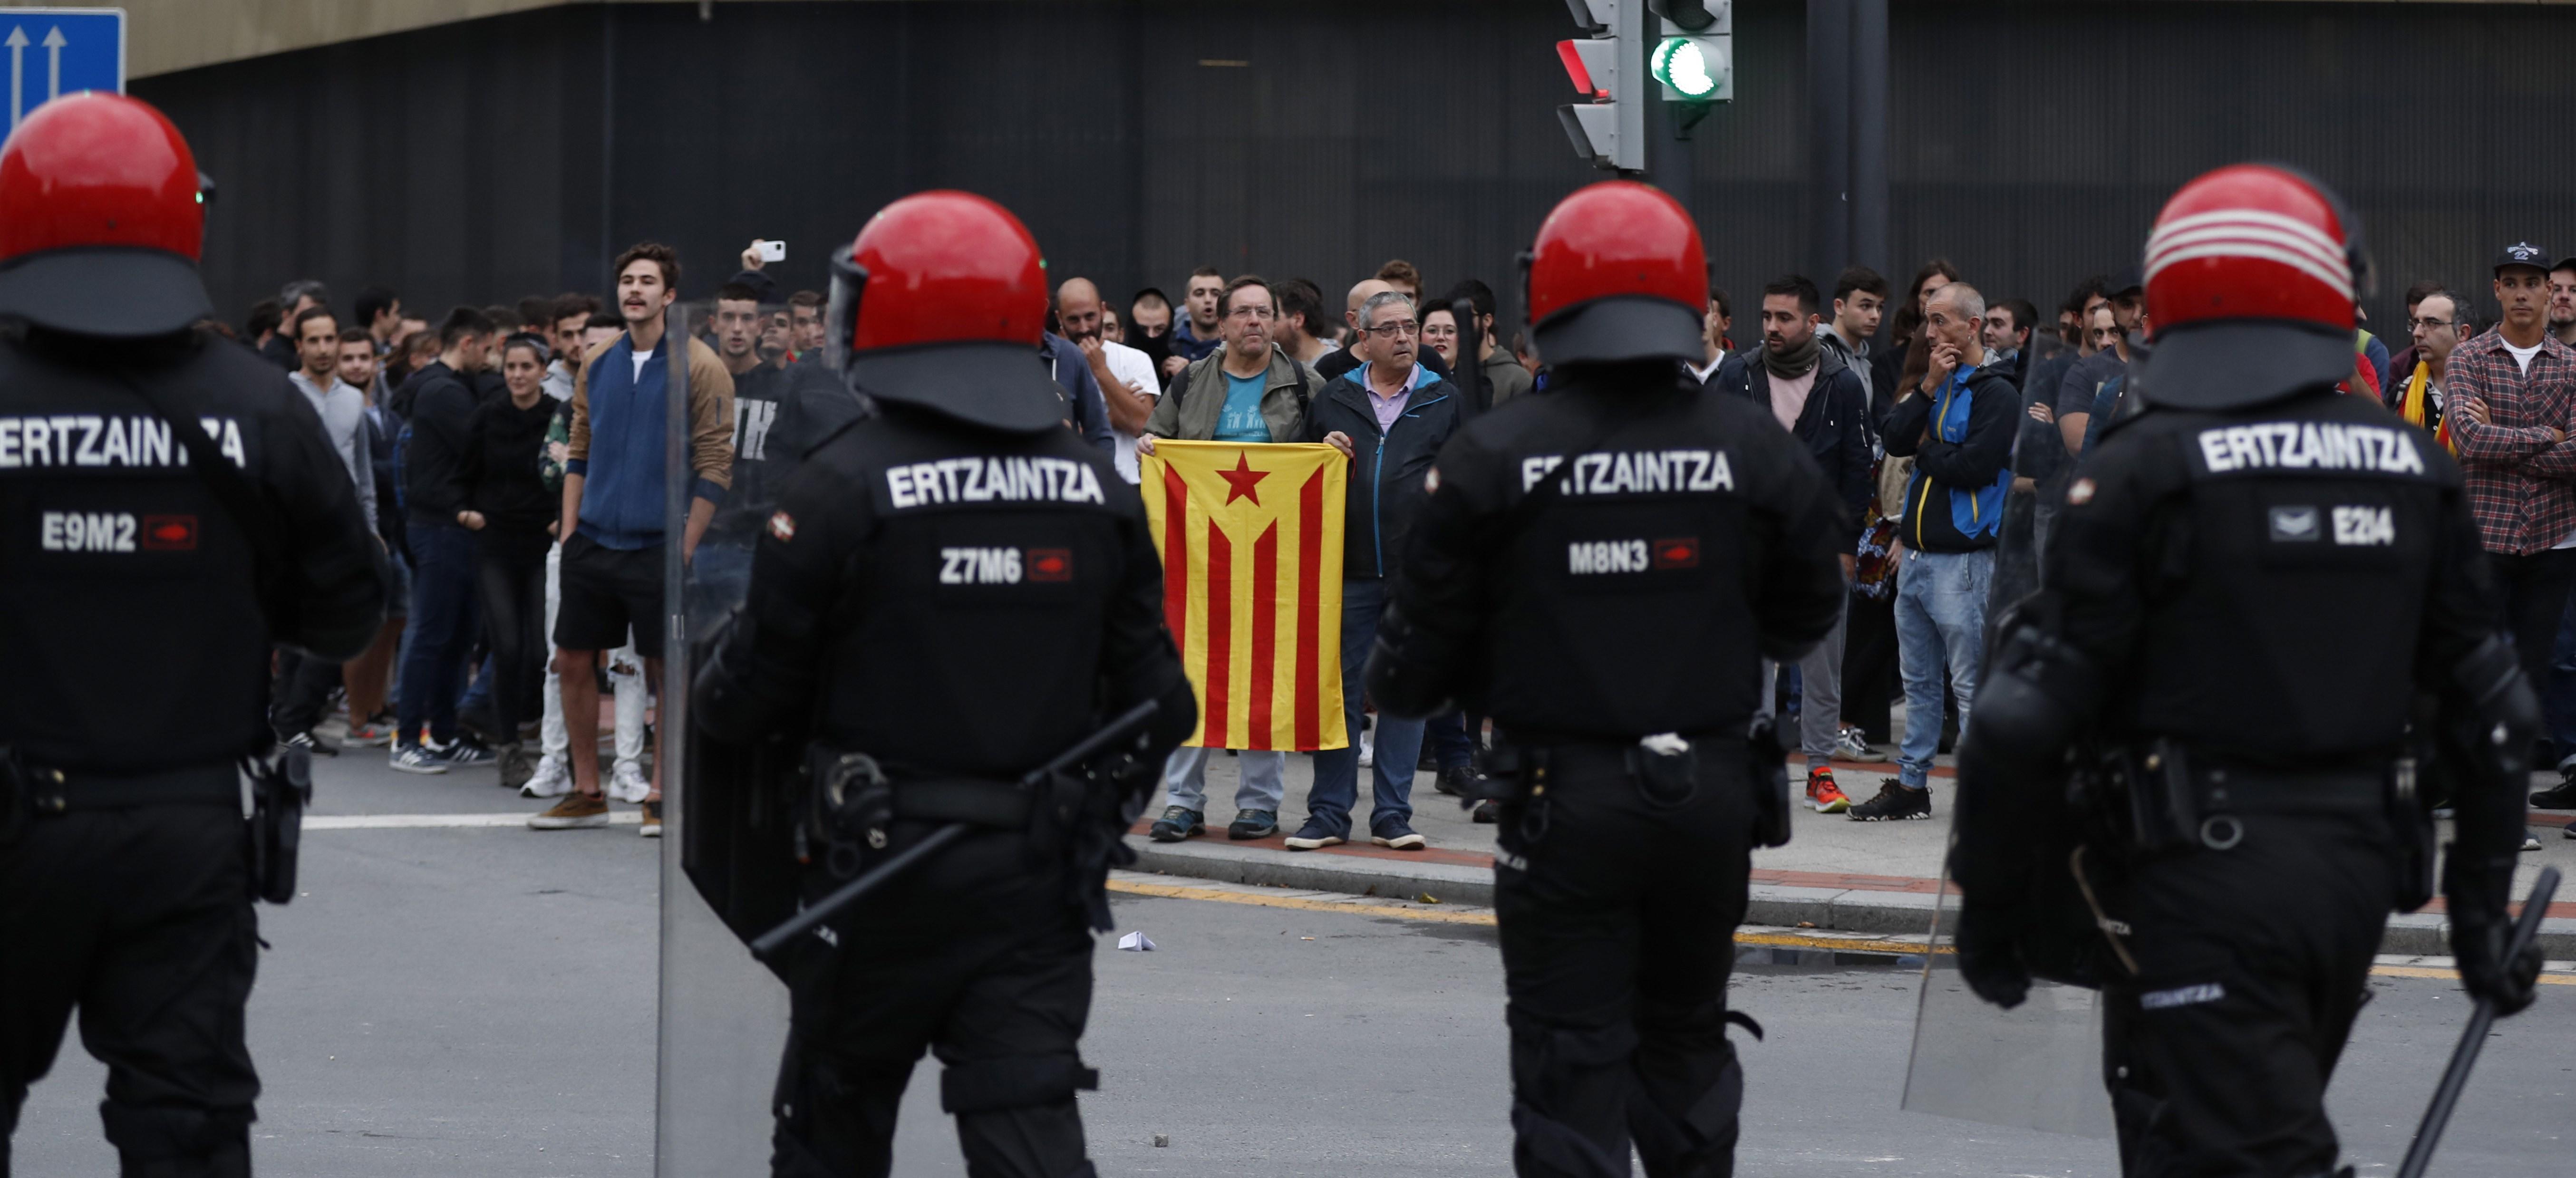 Tallen l'accés a cotxes a Bilbao en protesta per la sentència del procés